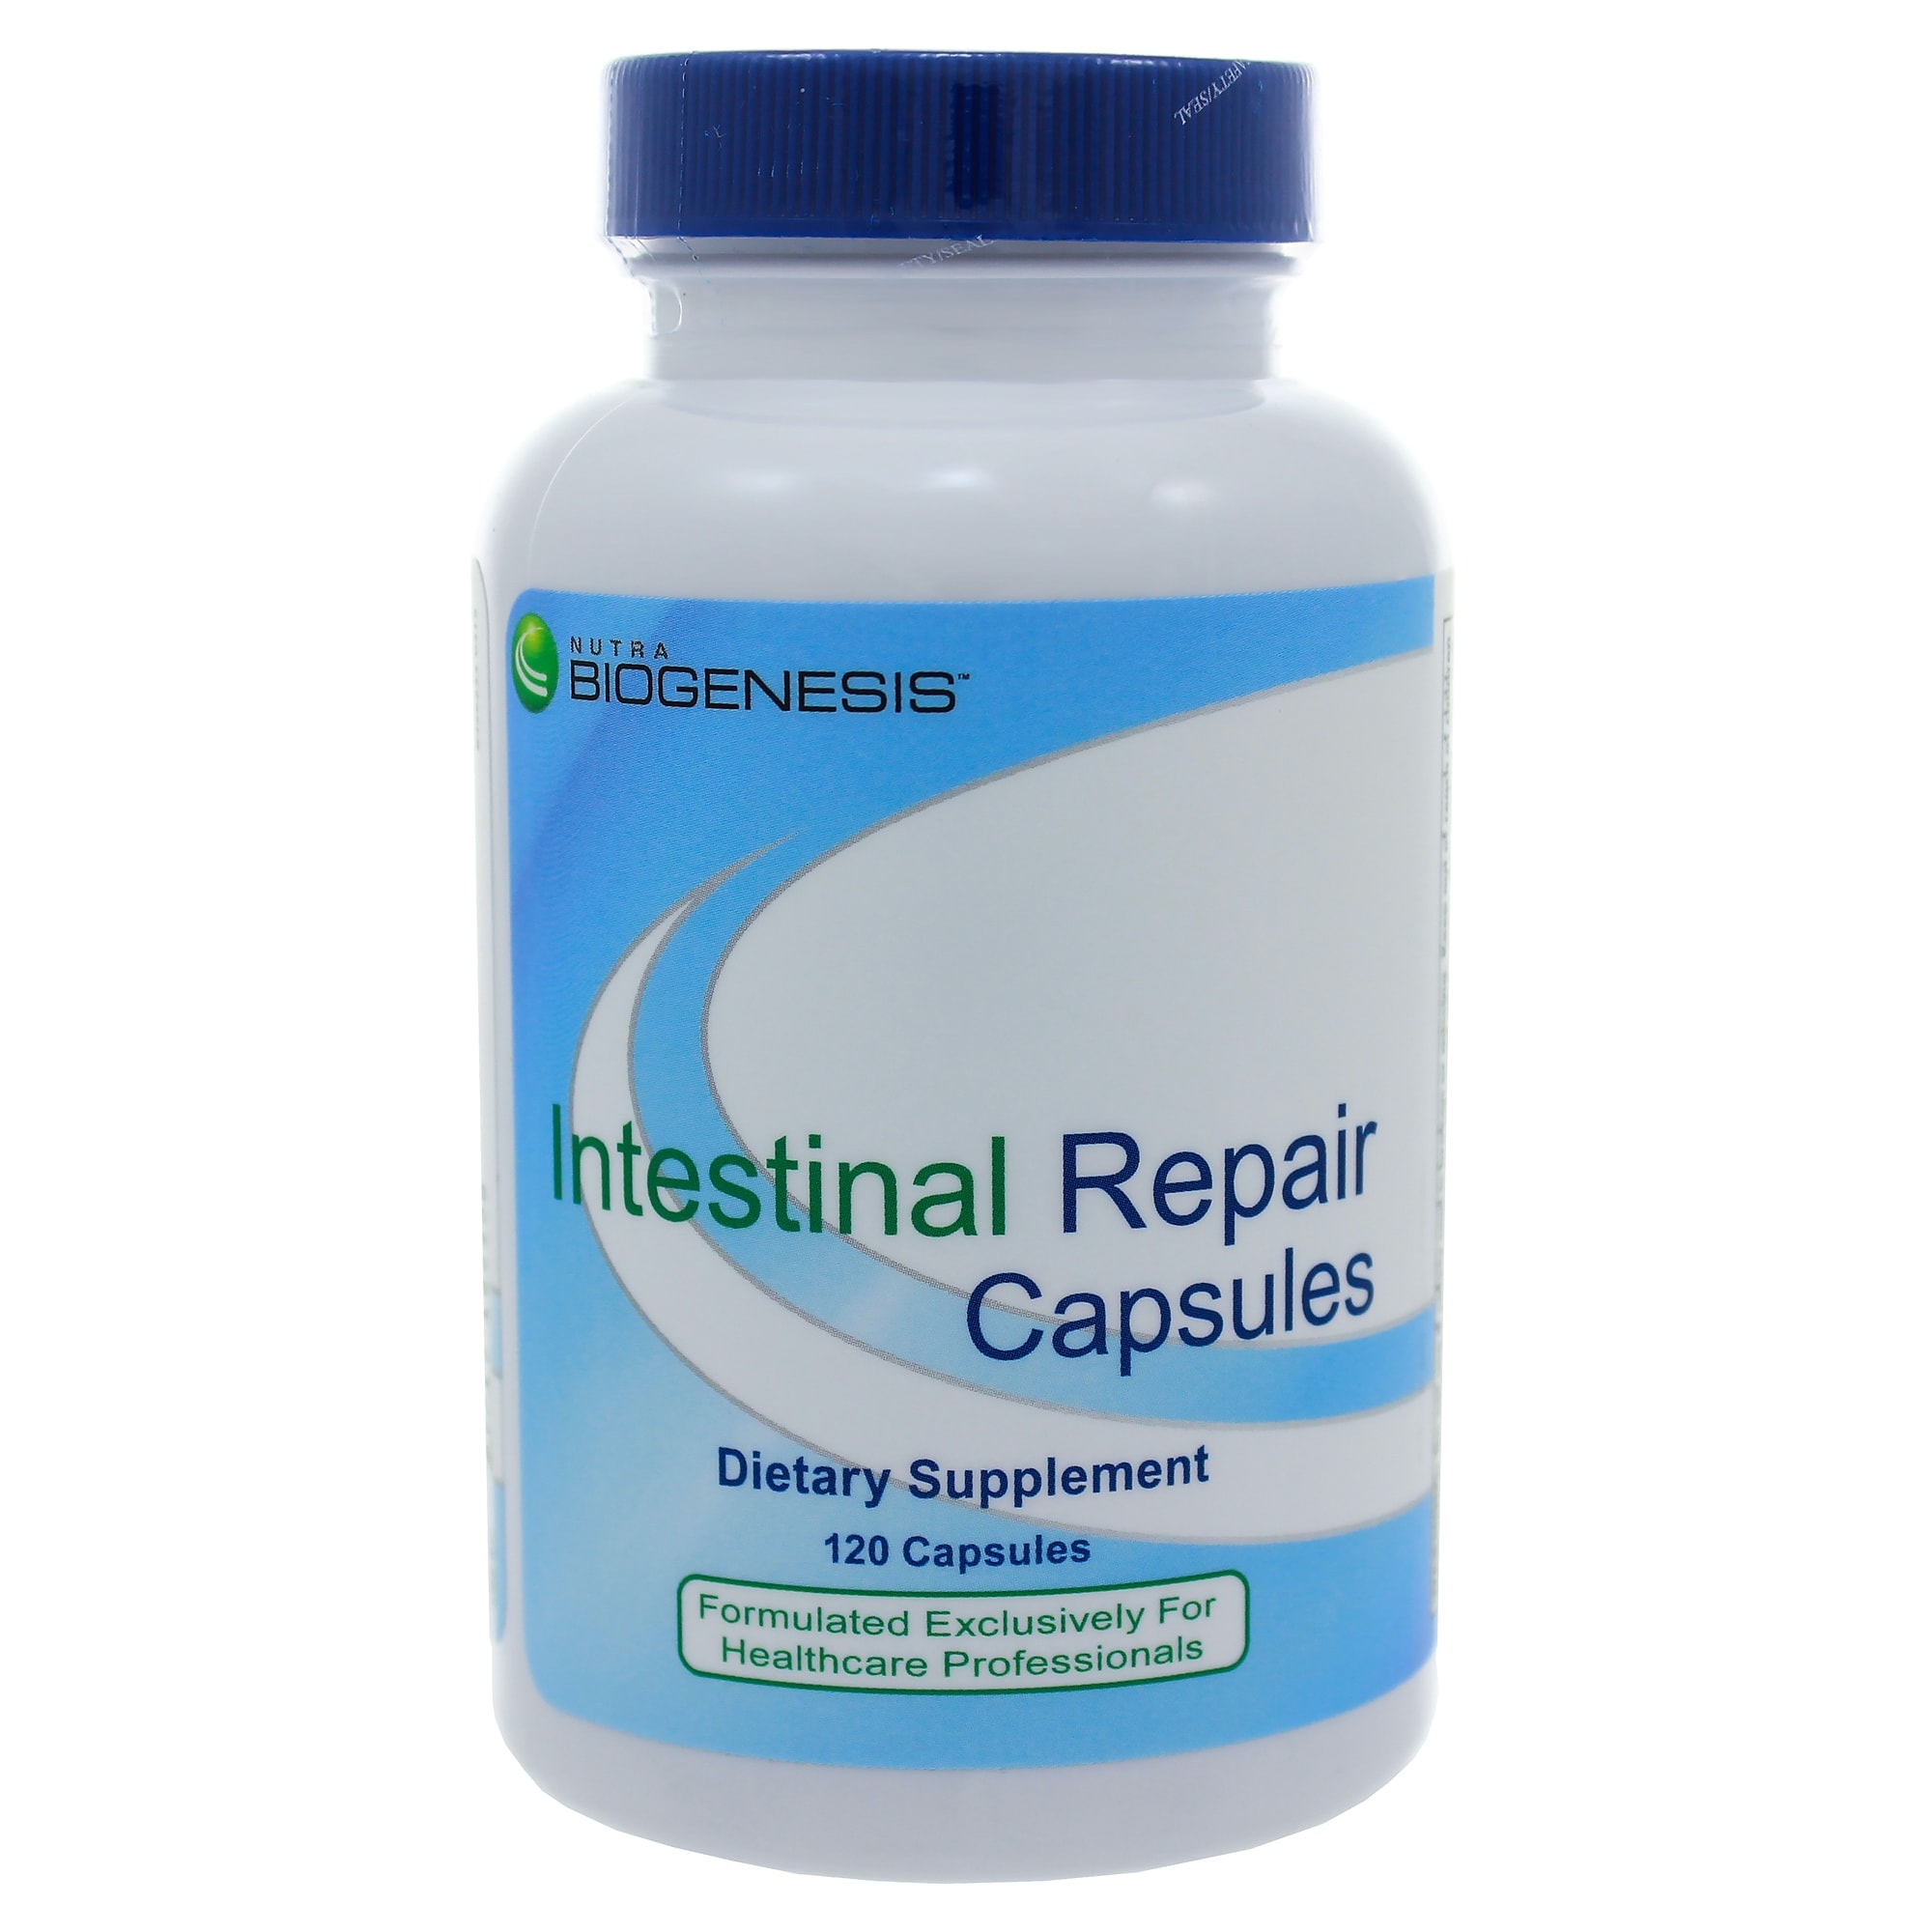 Buy Intestinal Repair Capsules - 120 capsules Online in Canada ...